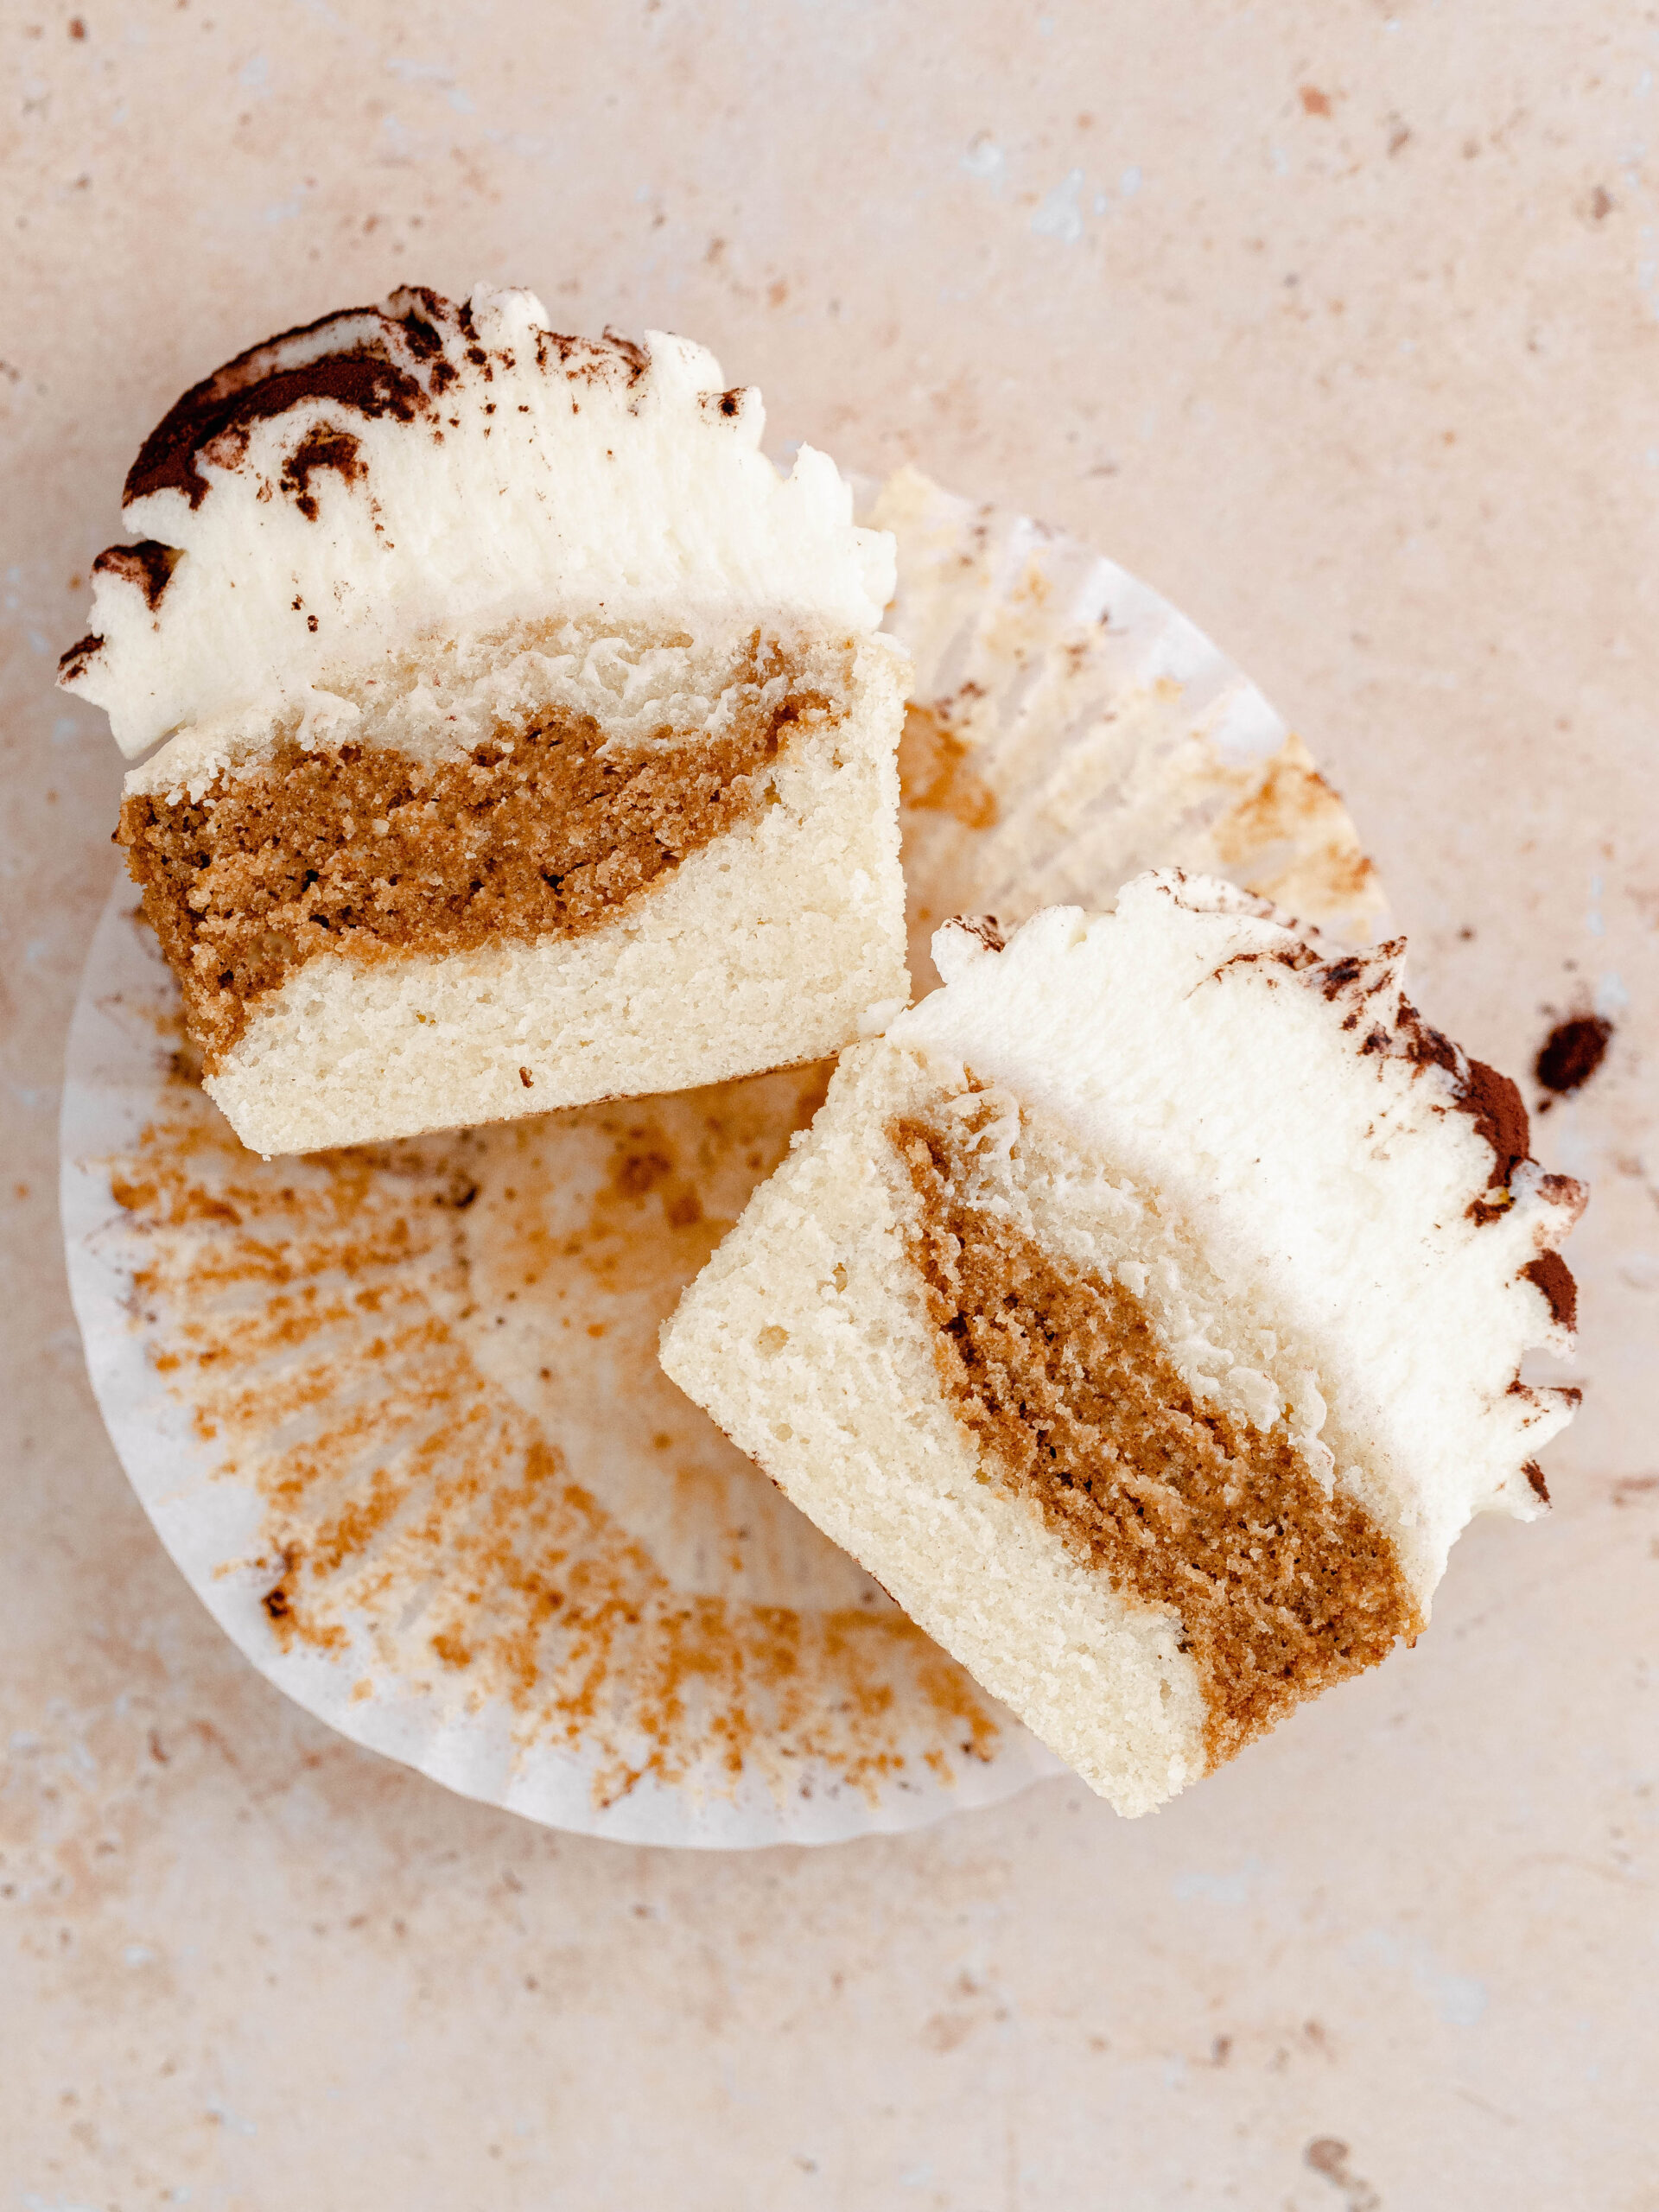 A Tiramisu cupcake cut in half.